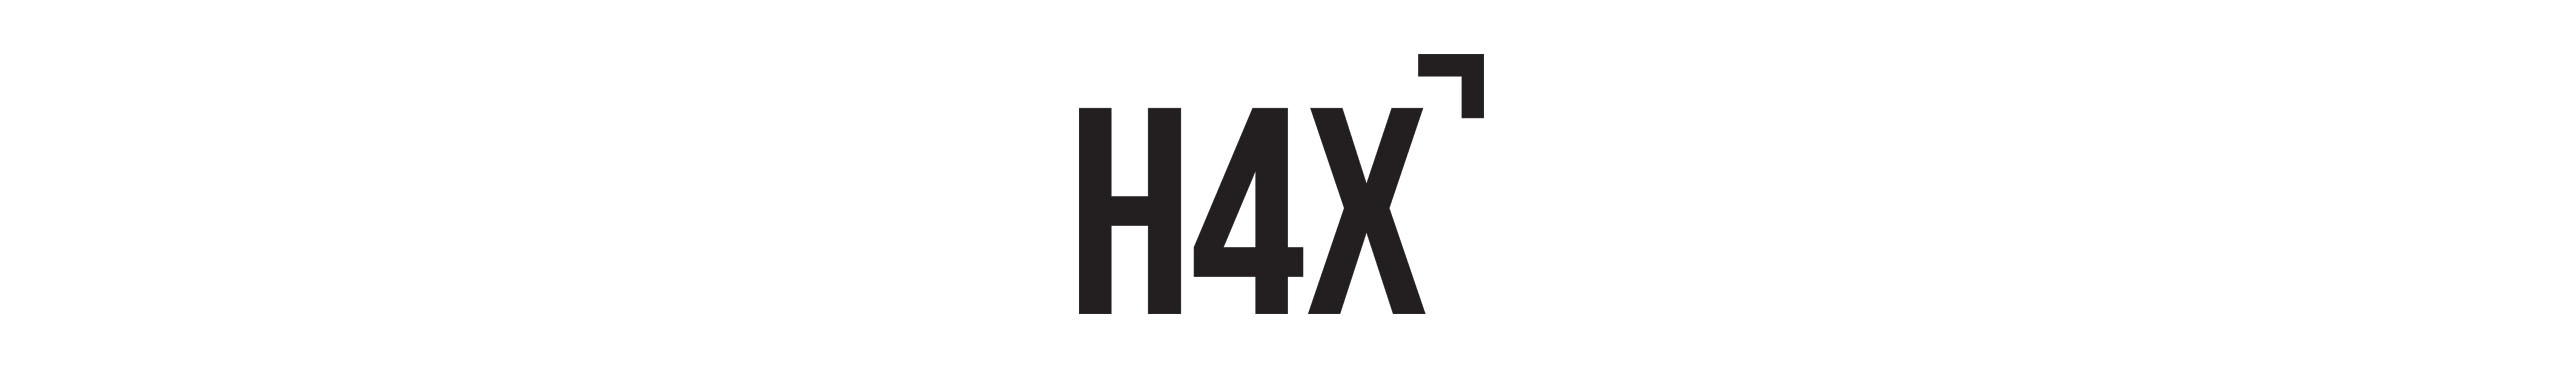 H4X.GG